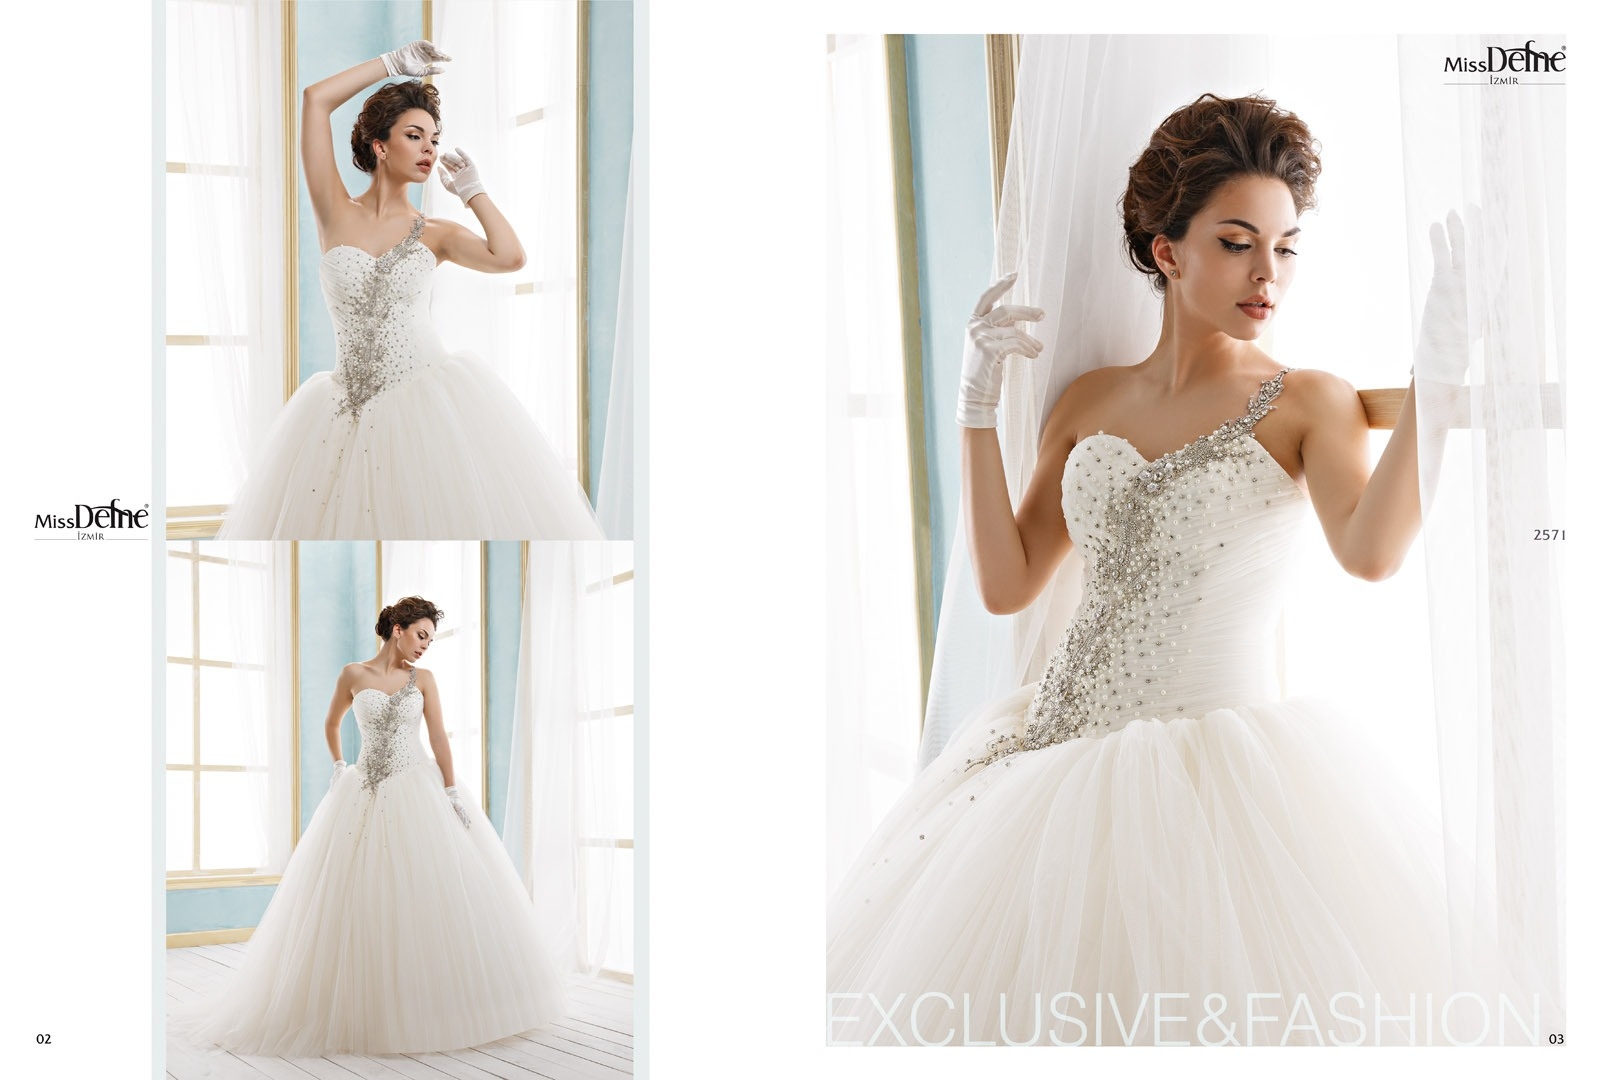 17 Luxurius Türkische Hochzeitskleider ÄrmelFormal Einfach Türkische Hochzeitskleider Design